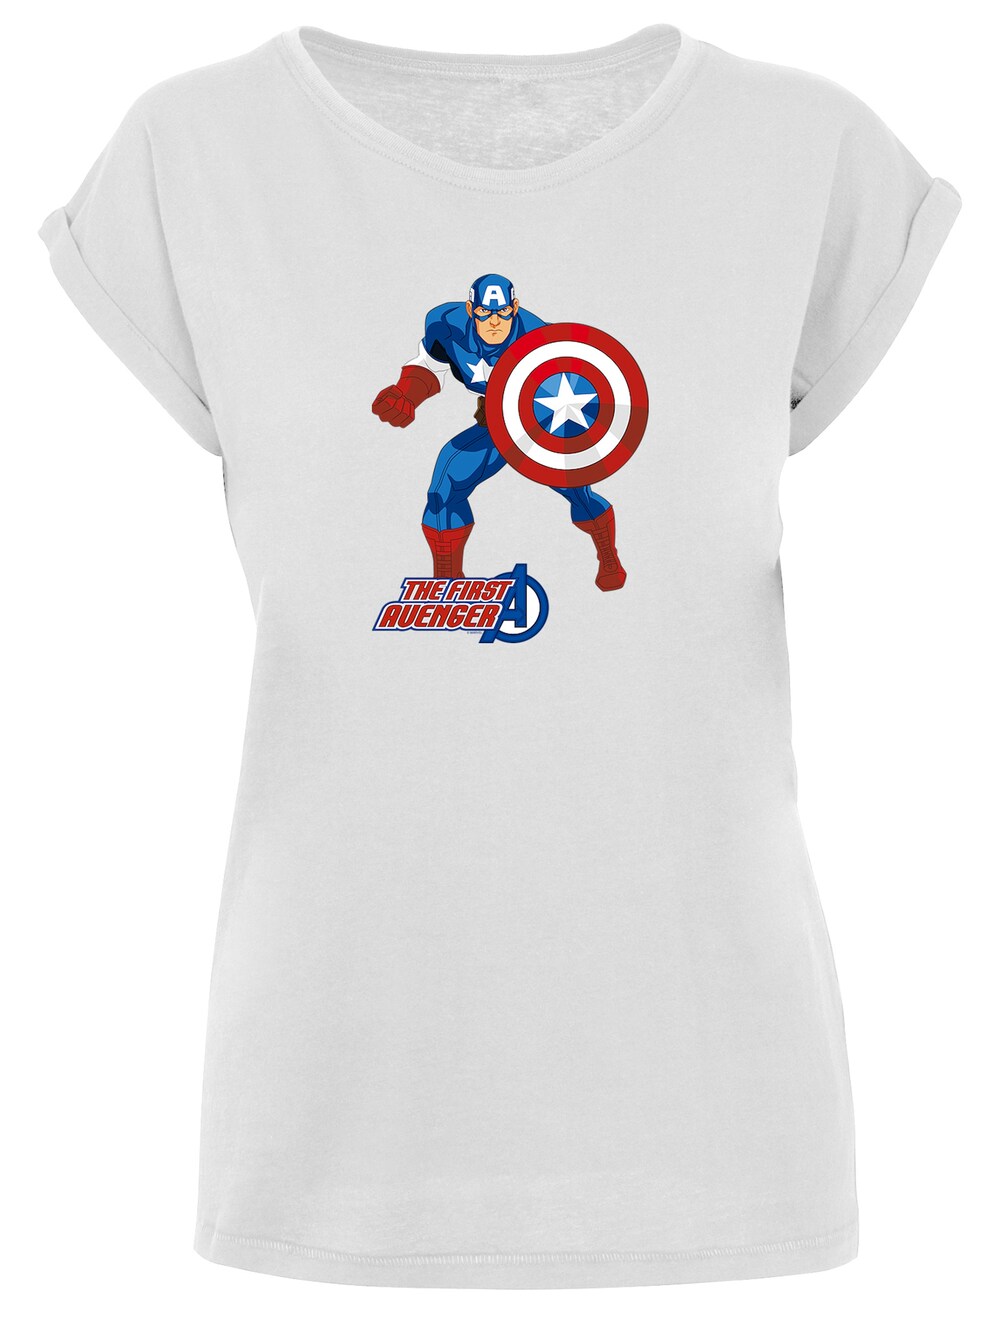 Рубашка F4Nt4Stic Captain America The First Avenger, белый the avenger super hero cosplay captain america steve rogers figure light emitting